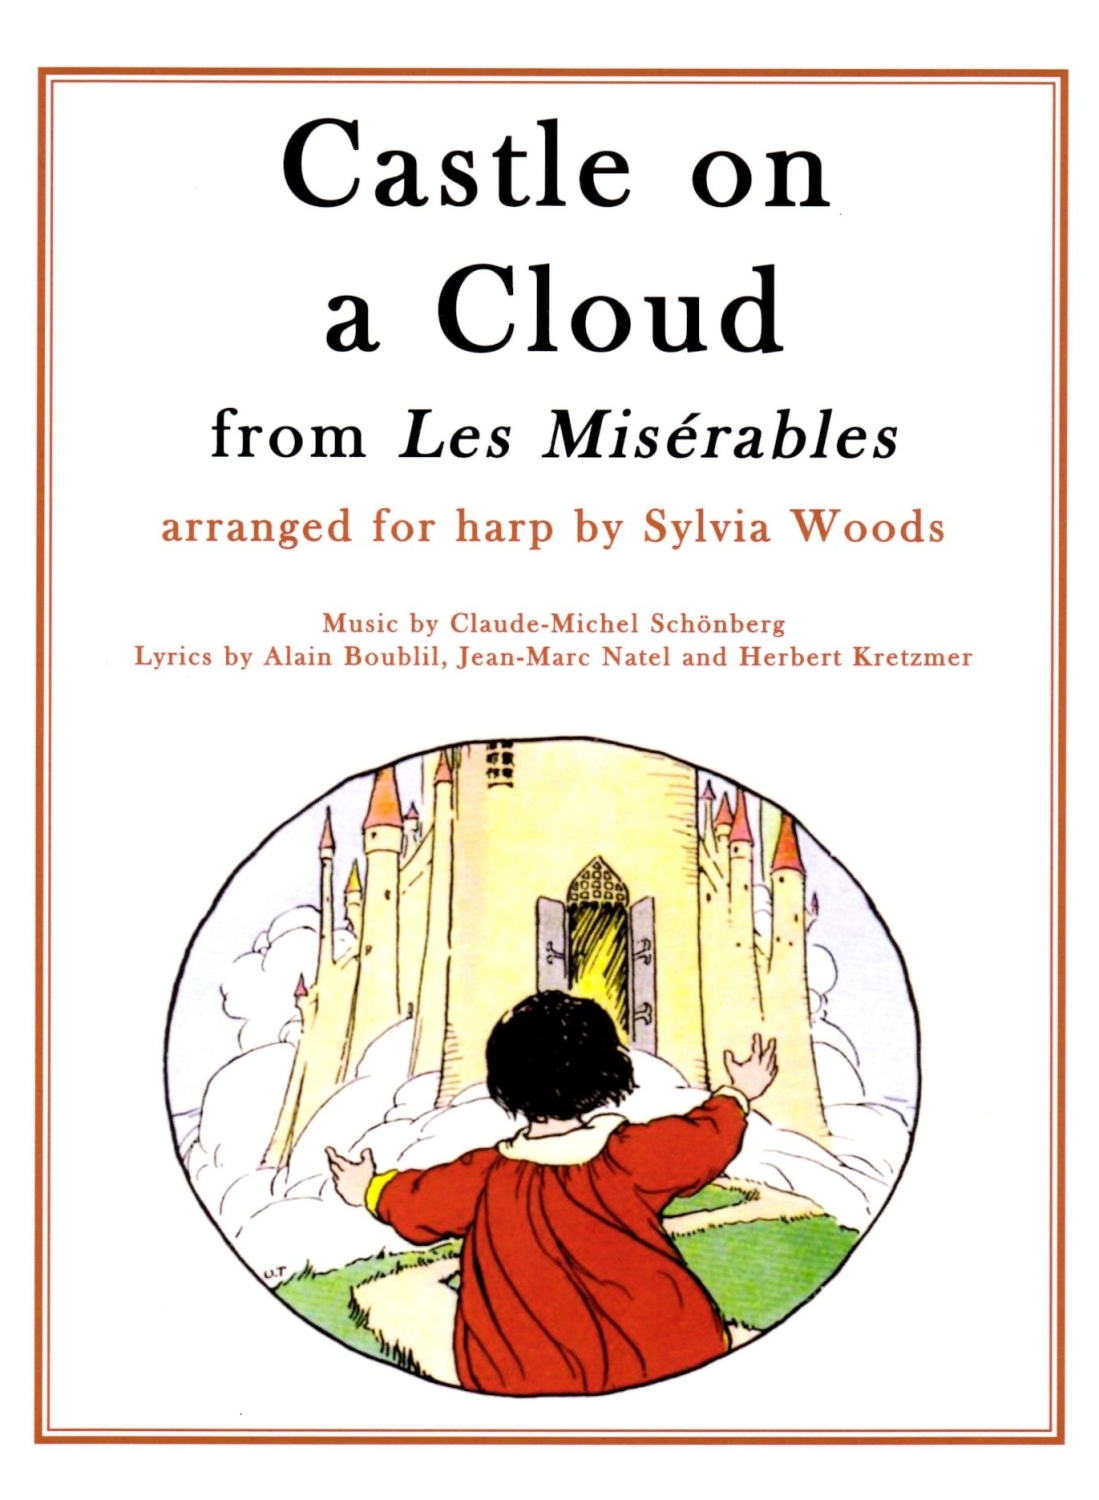 Castle on a Cloud from Les Miserables - Claude-Michel Schonberg